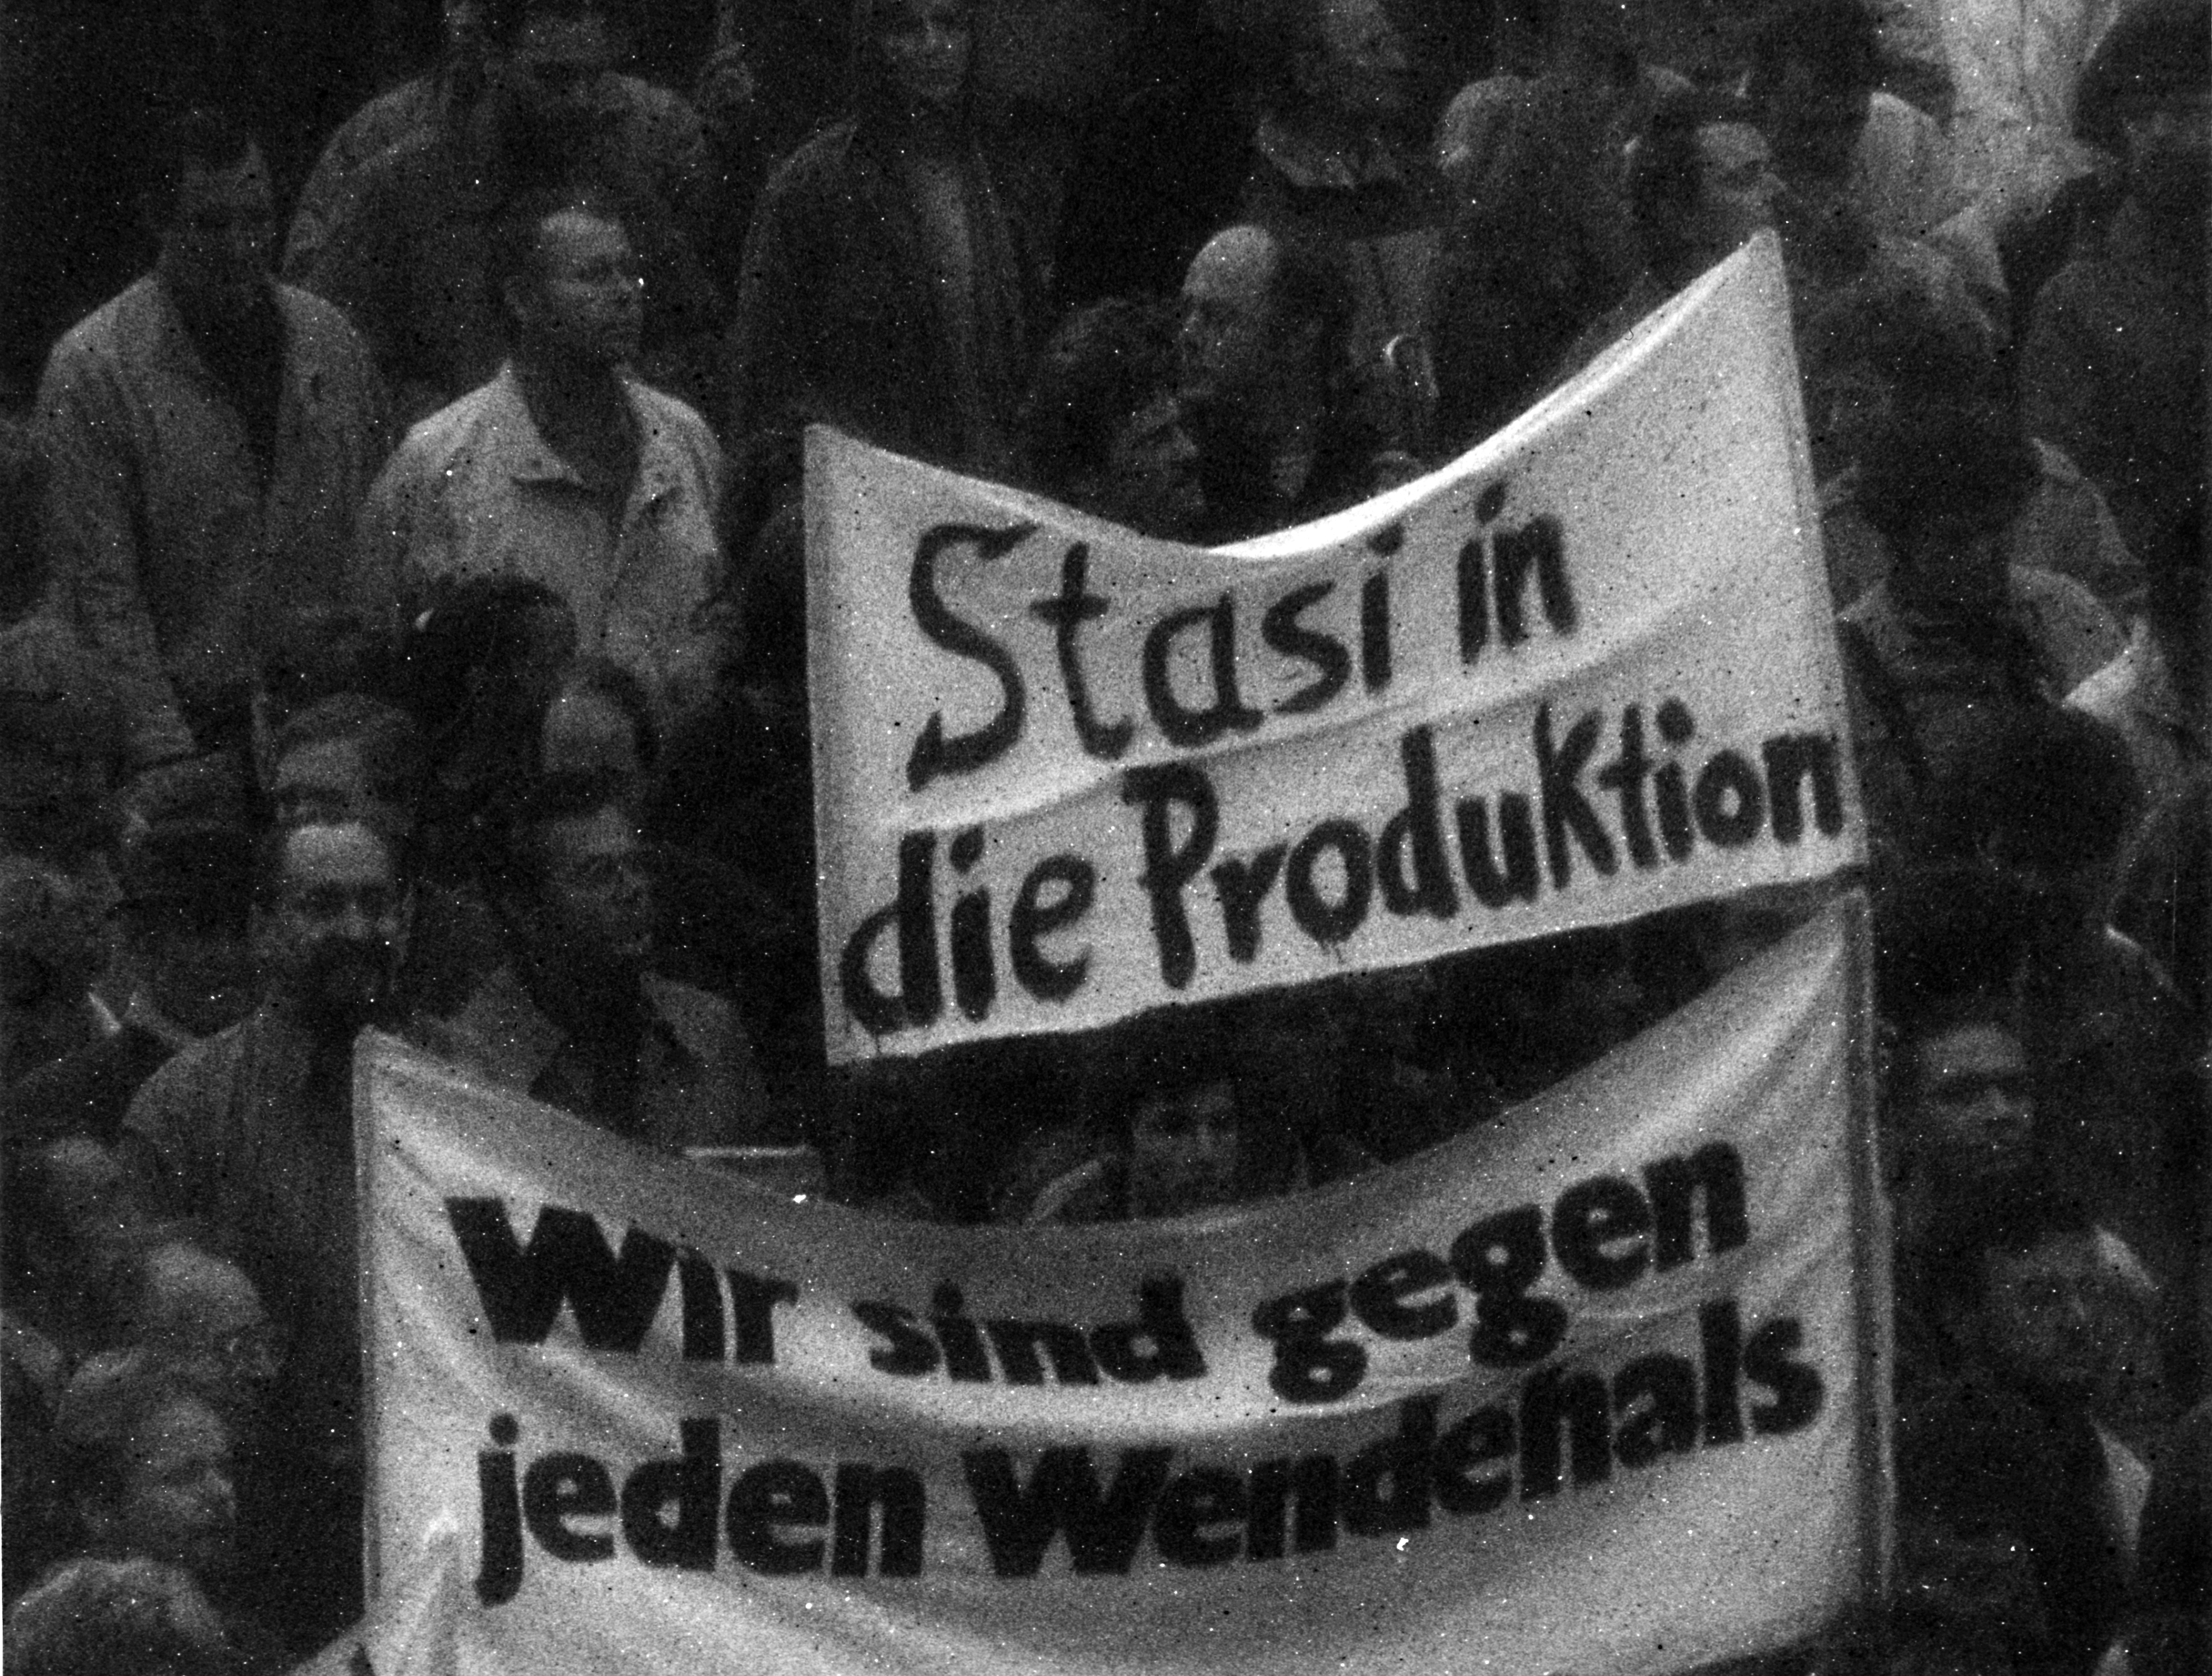 Blick auf Demonstration: Im Mittelpunkt des Bildes stehen zwei Transparente. Auf einem Transparent steht "Stasi in die Produktion", auf dem anderen "Wir sind gegen jeden Wendehals".